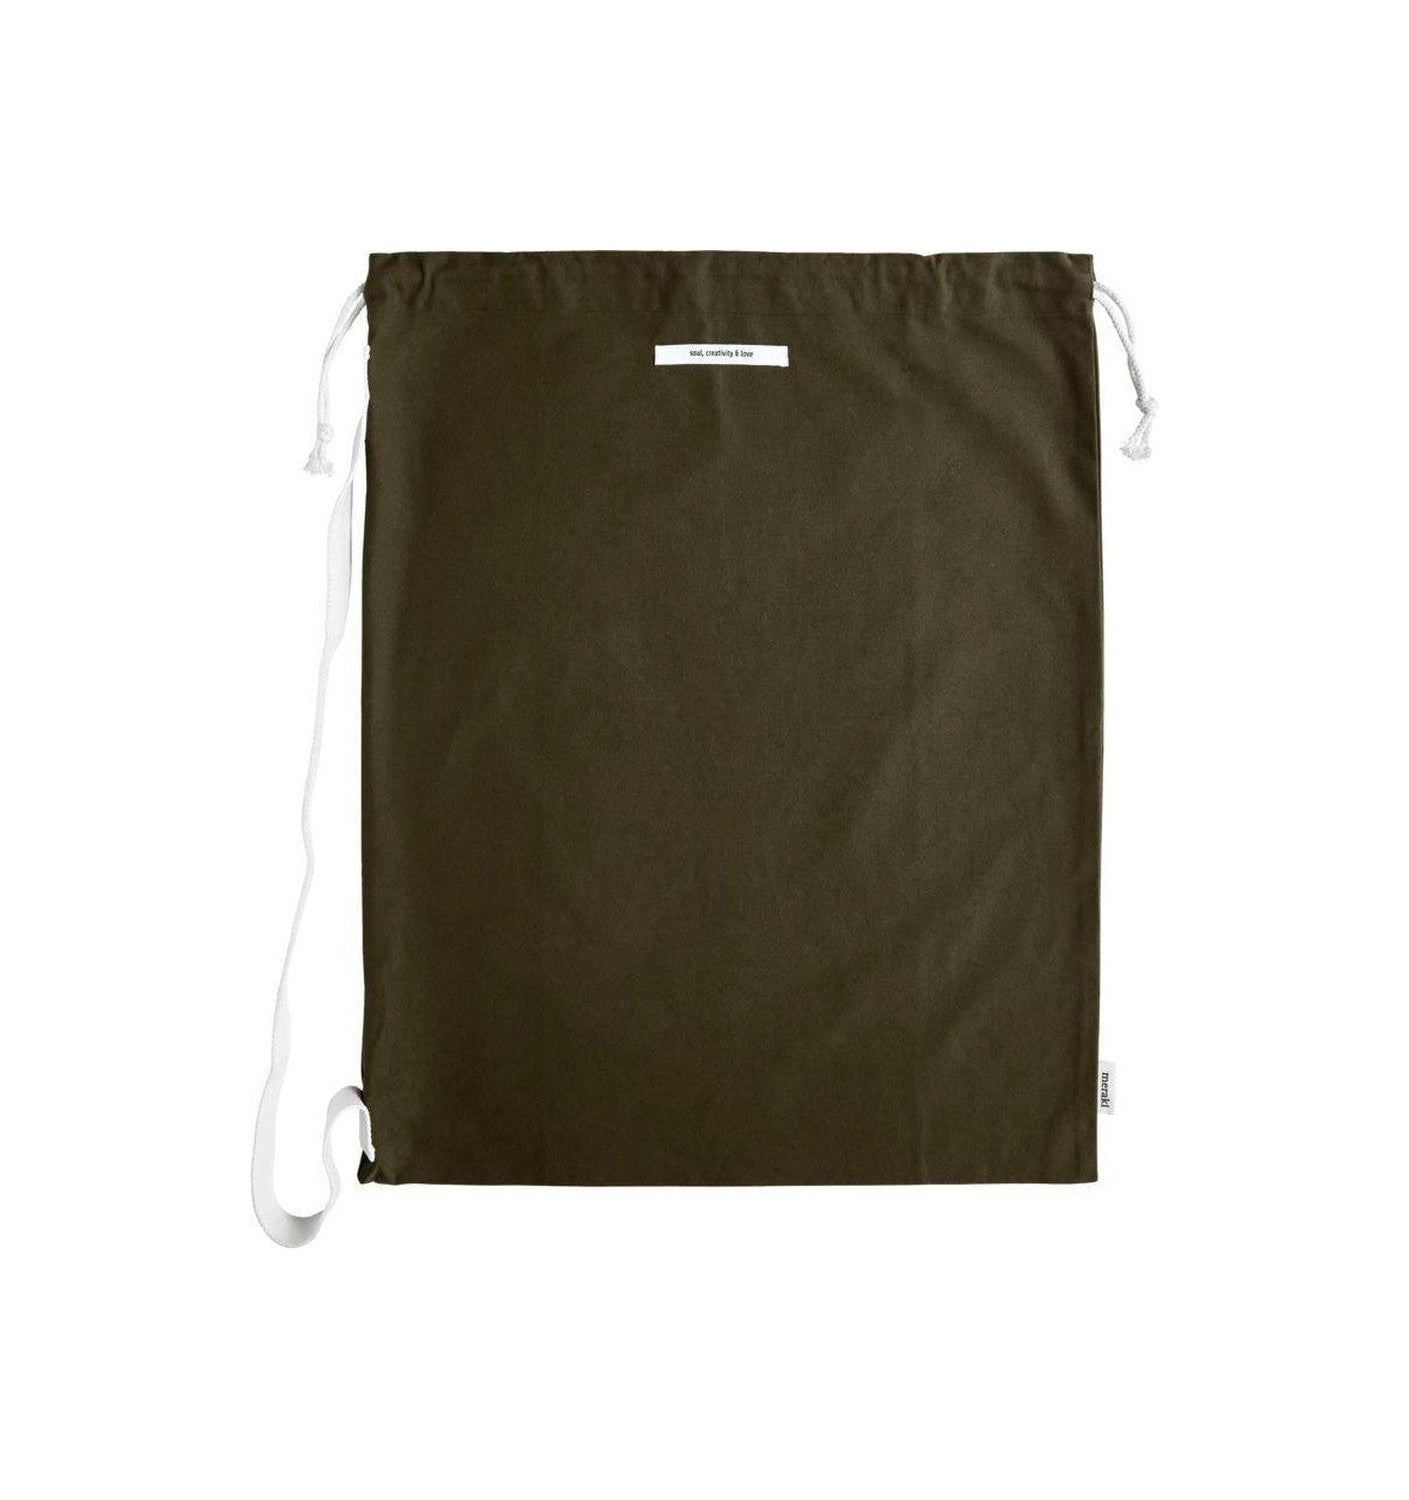 Meraki Cotton Bag, Mkcataria, Green de l'armée